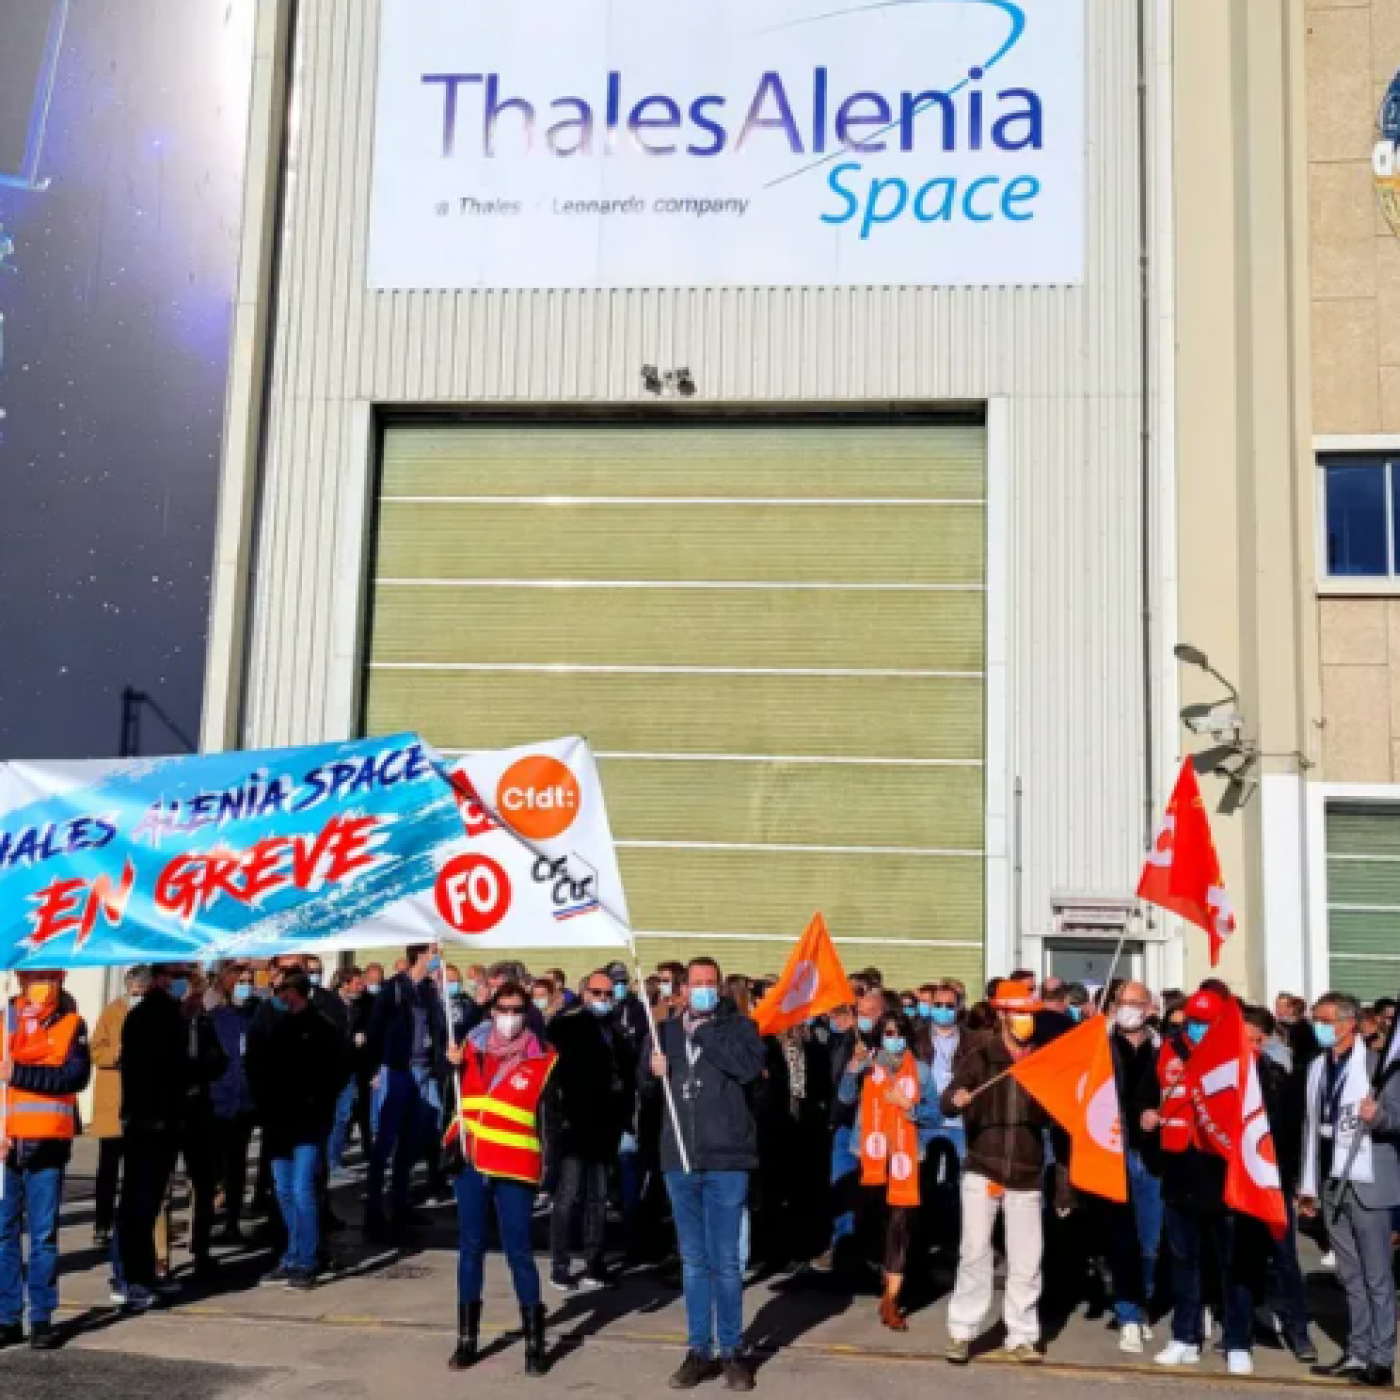 La mobilisation des salariés se poursuit chez Thales Alenia Space à Cannes